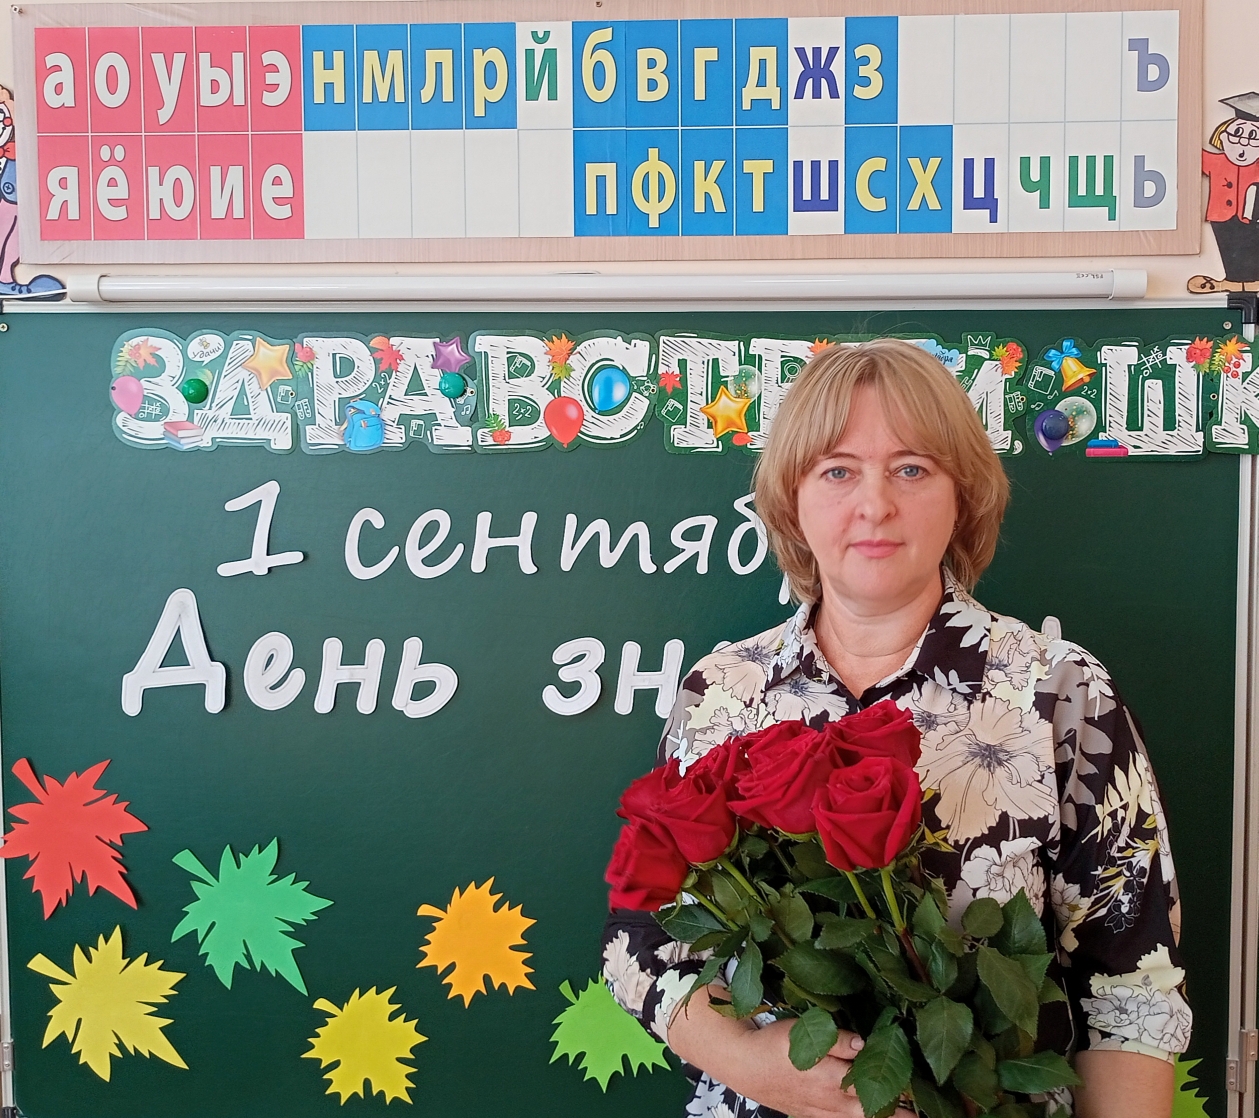 Хованова Наталья Александровна.